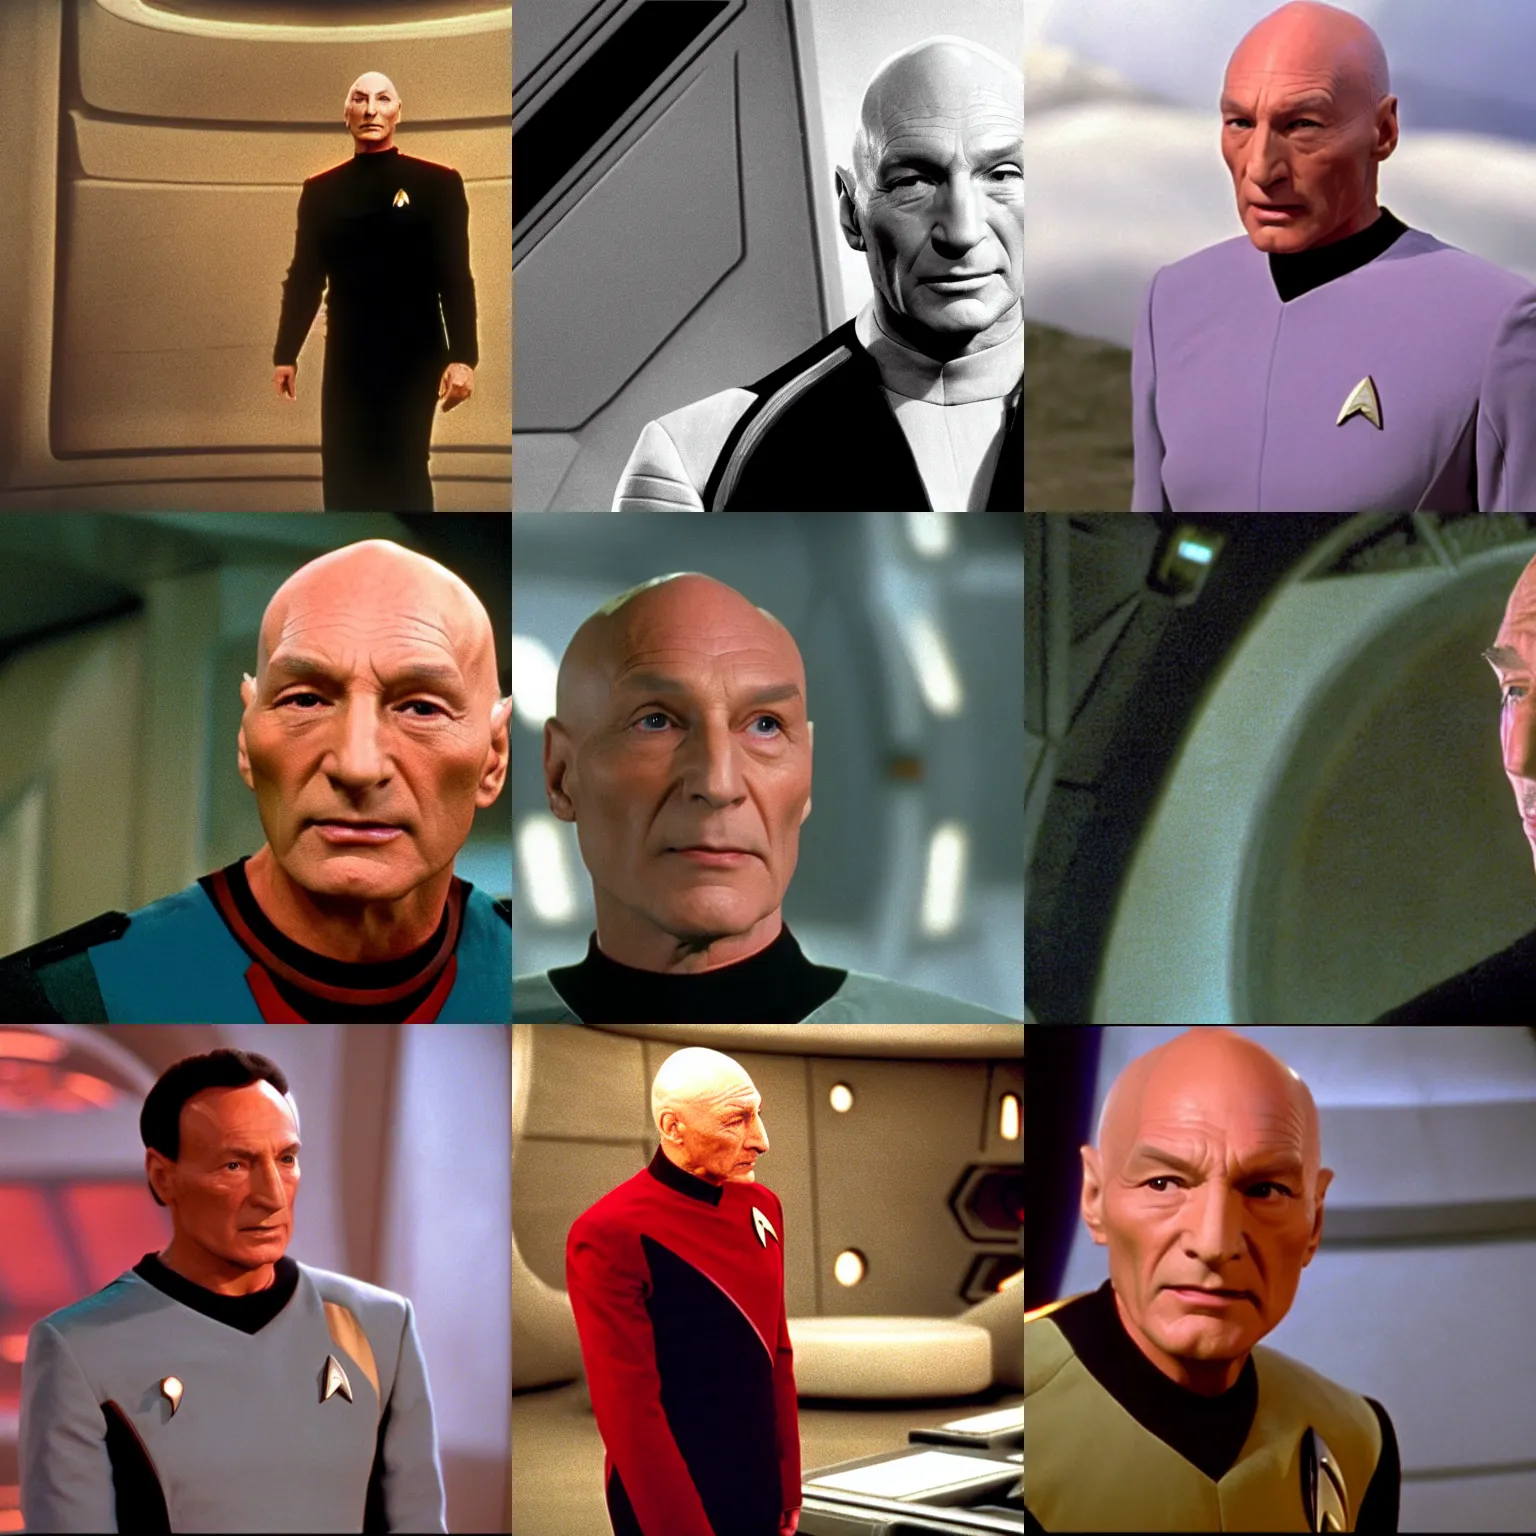 Prompt: Picard in Star Trek Deep Space Nine (1994)